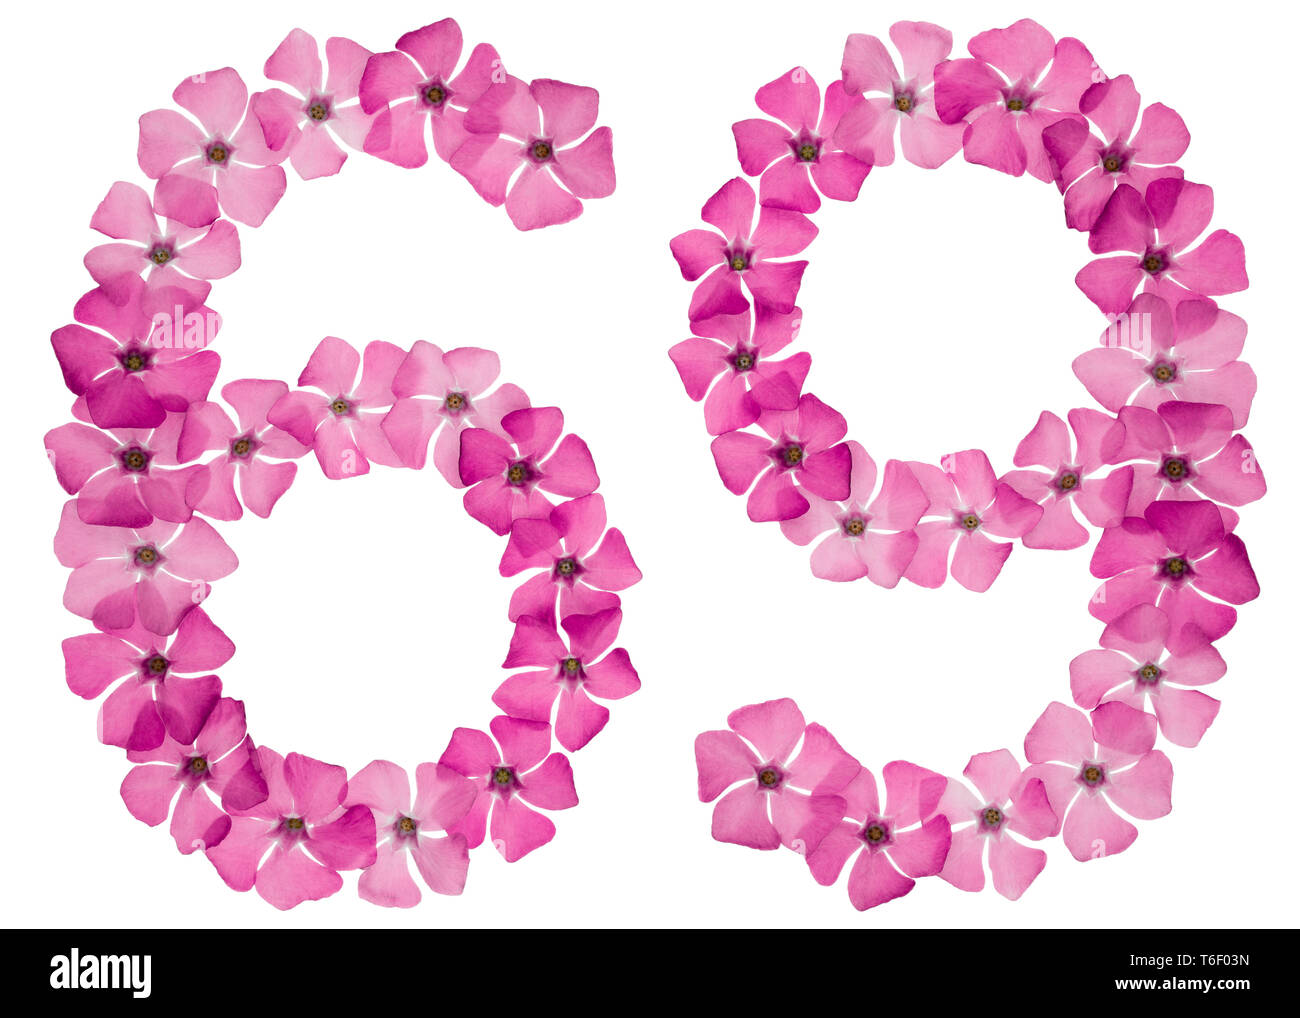 Chiffre 69, soixante-neuf, par les fleurs roses de la pervenche, isolé sur fond blanc Banque D'Images